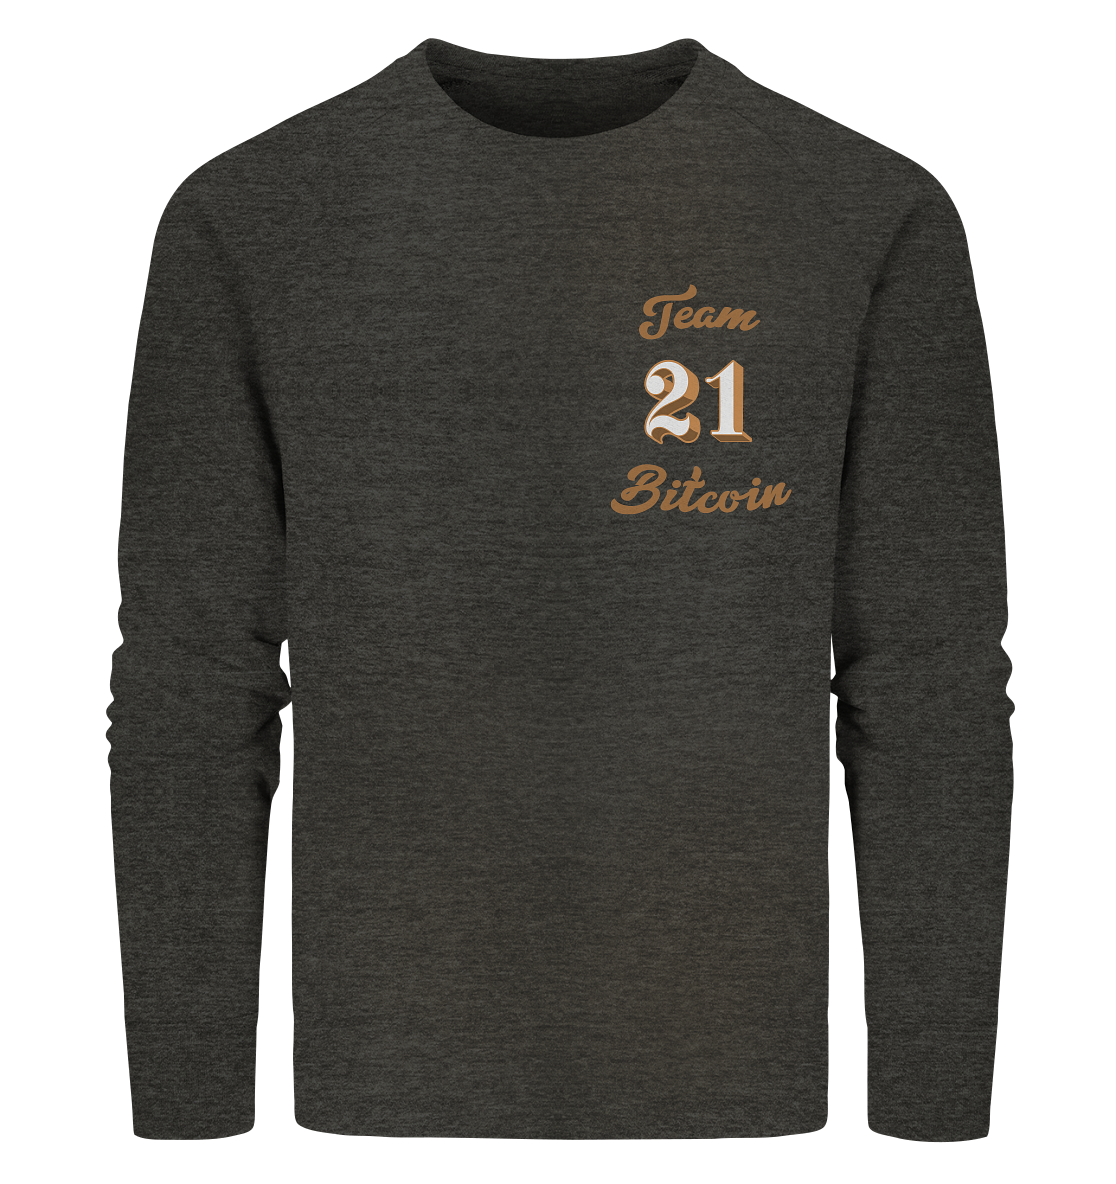 Bitcoin Sweatshirt "Team Bitcoin 21" - Organic Sweatshirt